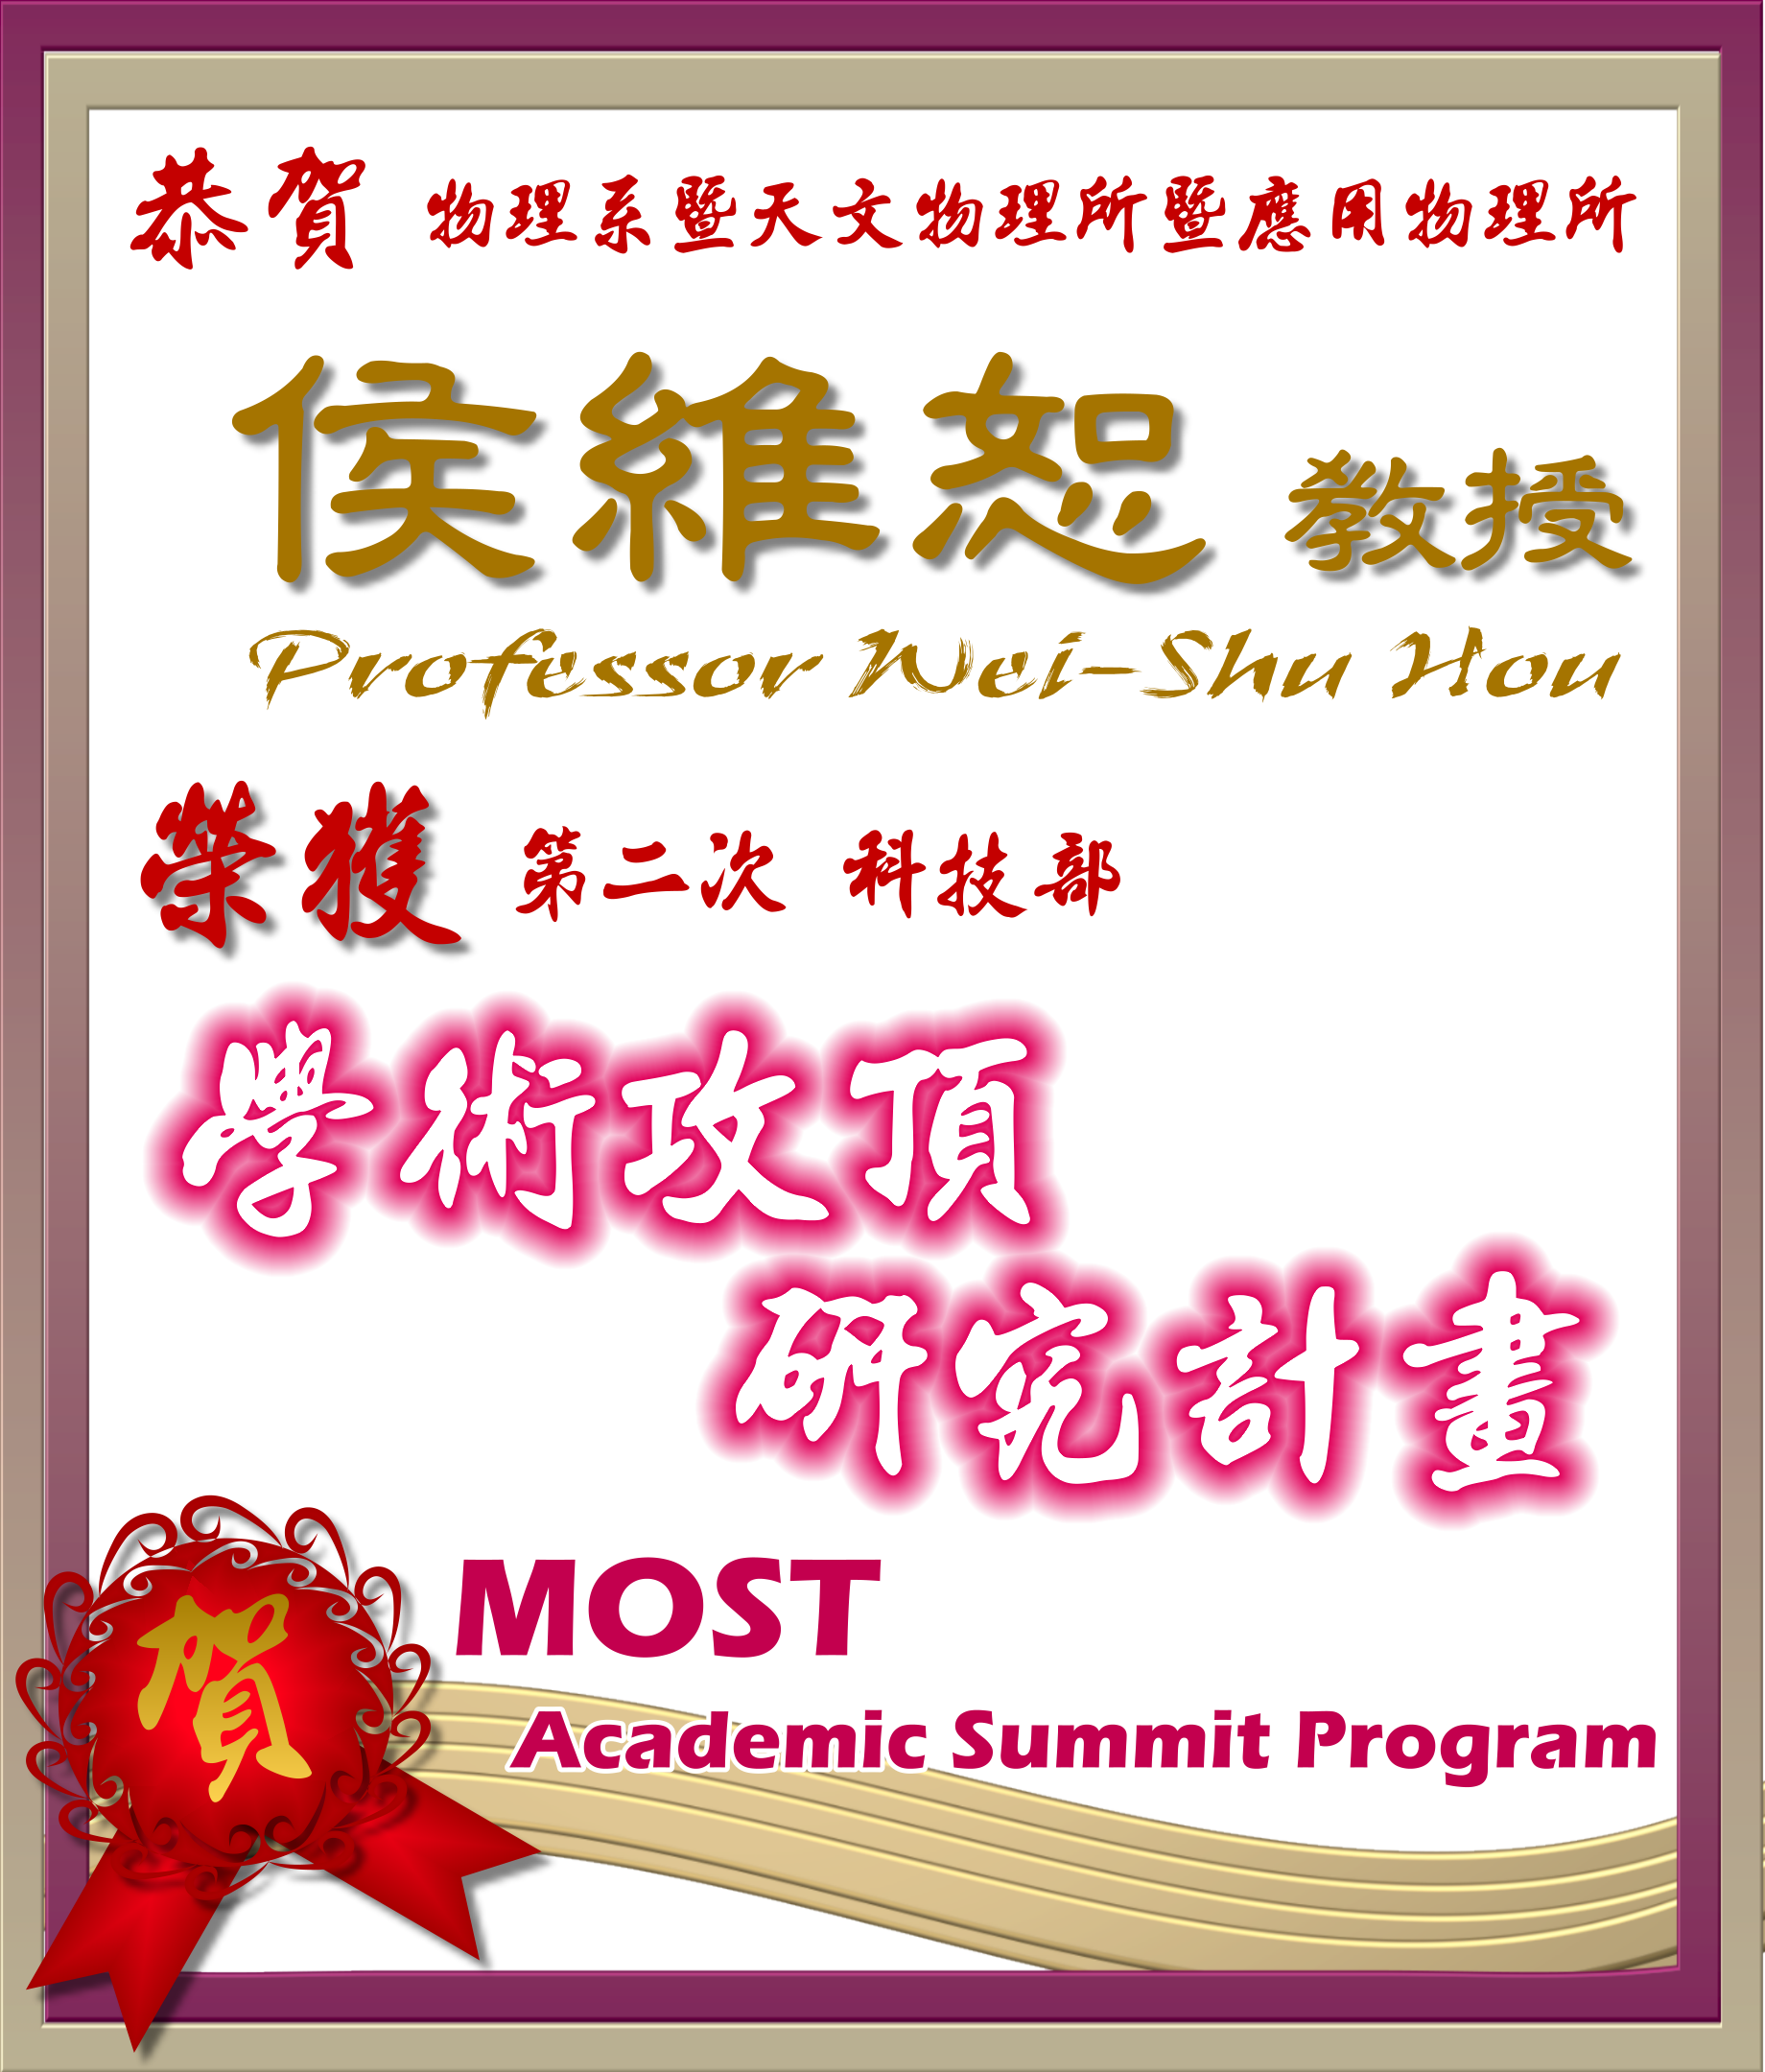 《賀》本系 侯維恕 教授 Prof. Wei-Shu Hou 榮獲 第二次 科技部《學術攻頂研究計畫》(MOST Academic Summit Program)